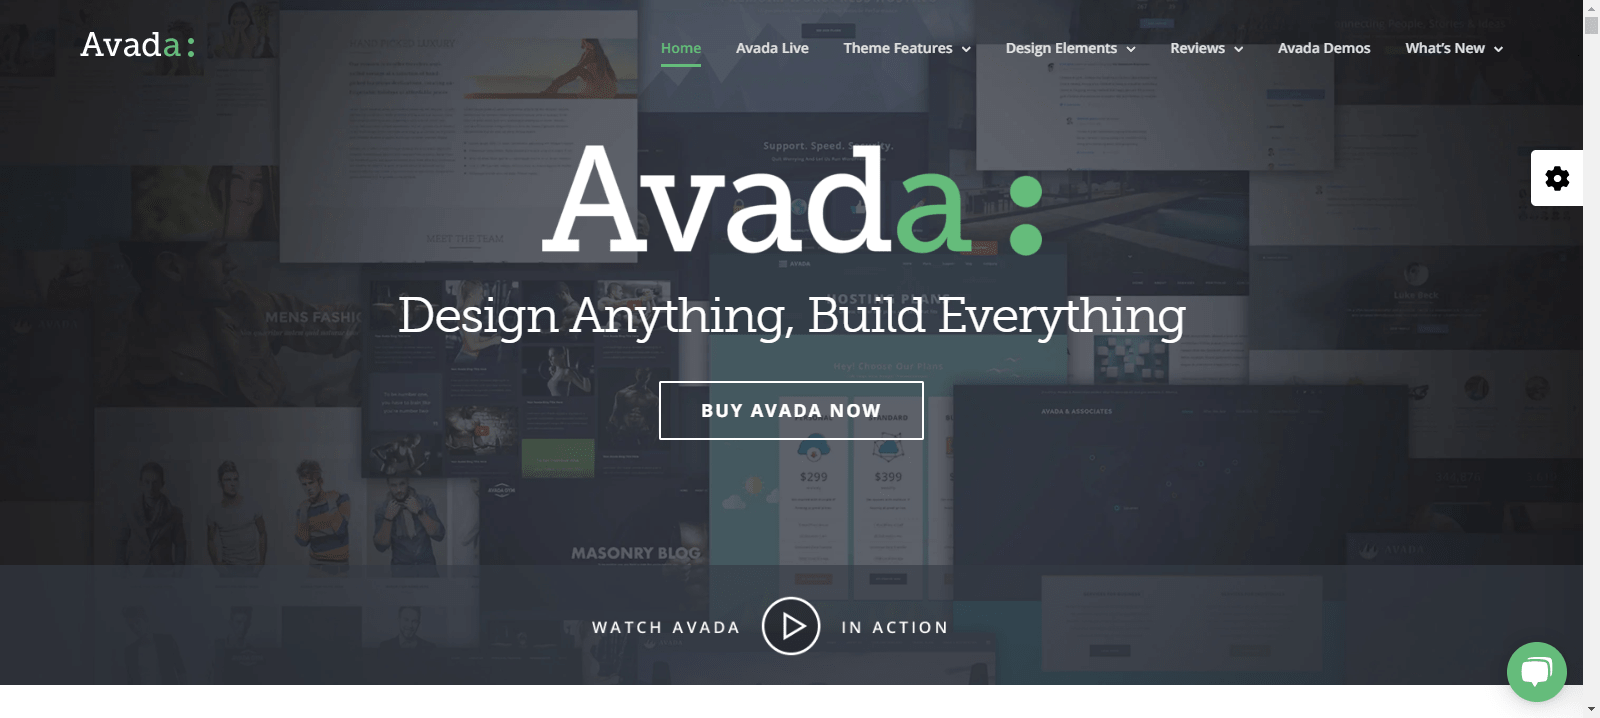 Avada- Free Coming Soon WordPress Theme